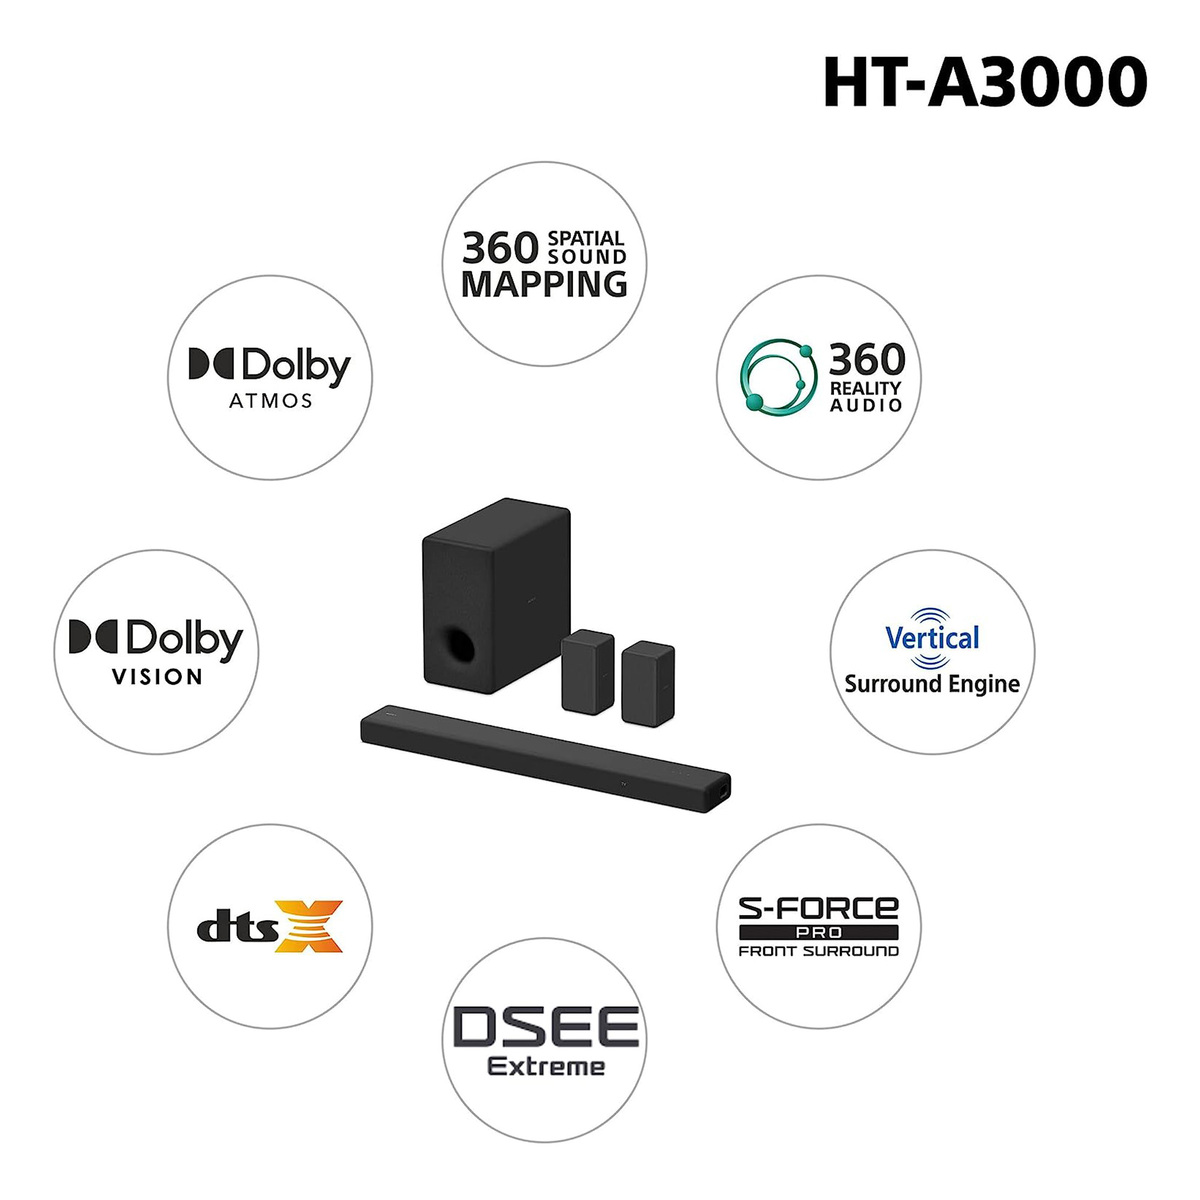 سوني ساوند بار بلوتوث 250 واط و 3.1 قناة 360 SSM ، بتقنية دولبي أتموس ، أسود ، HT-A3000